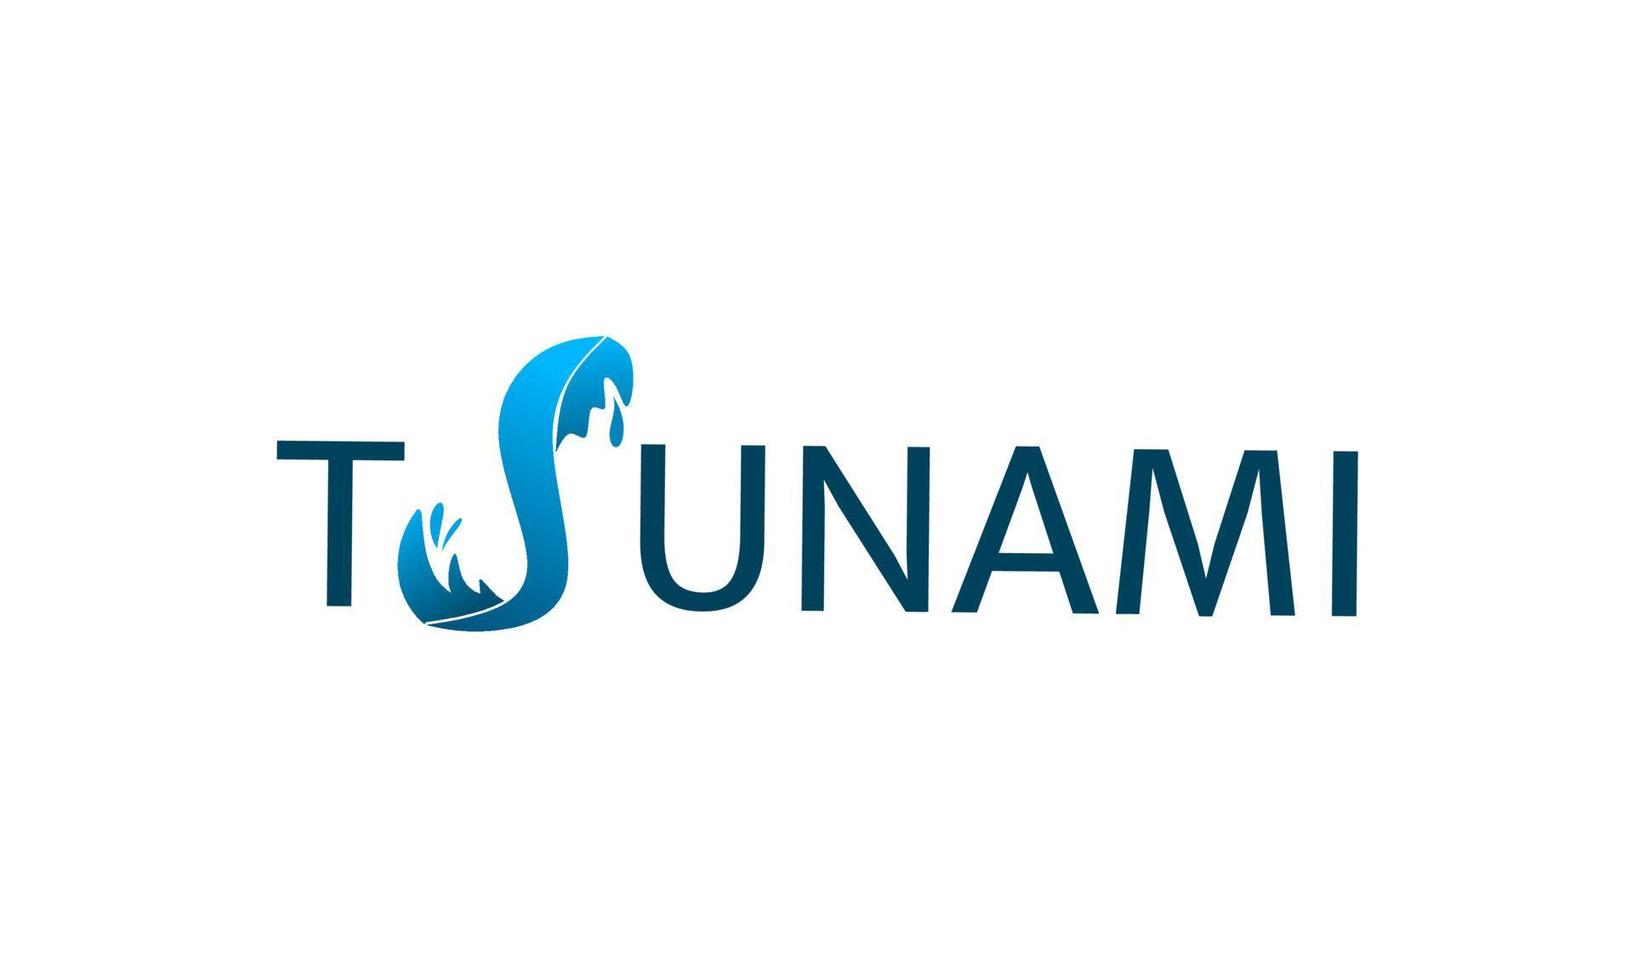 logo typografie text tsunami buchstaben s formen welle vektor